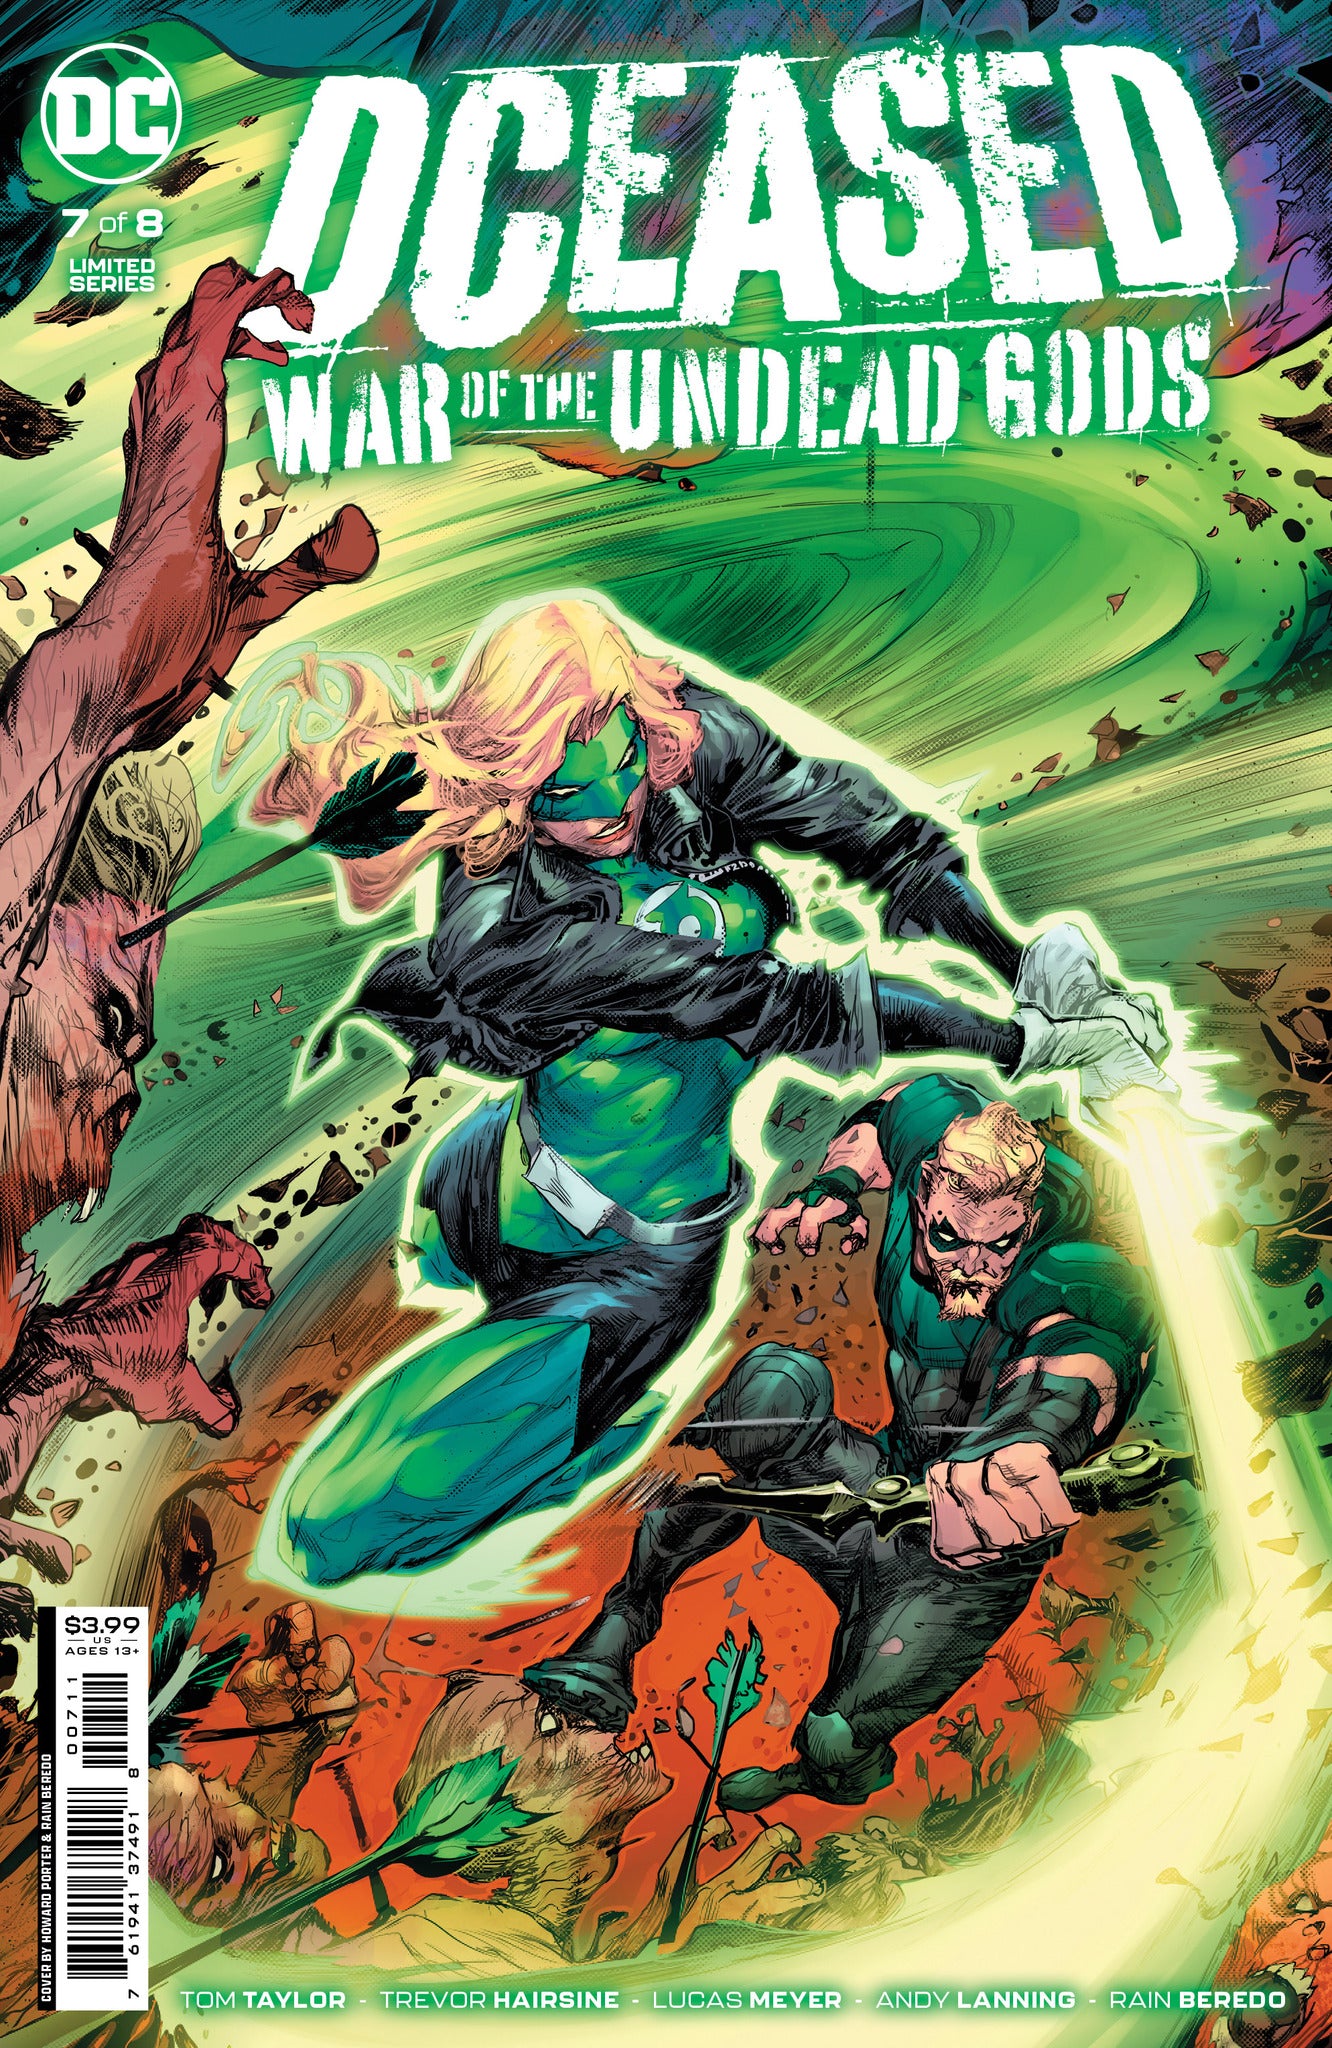 DCeased: War of the Undead Gods